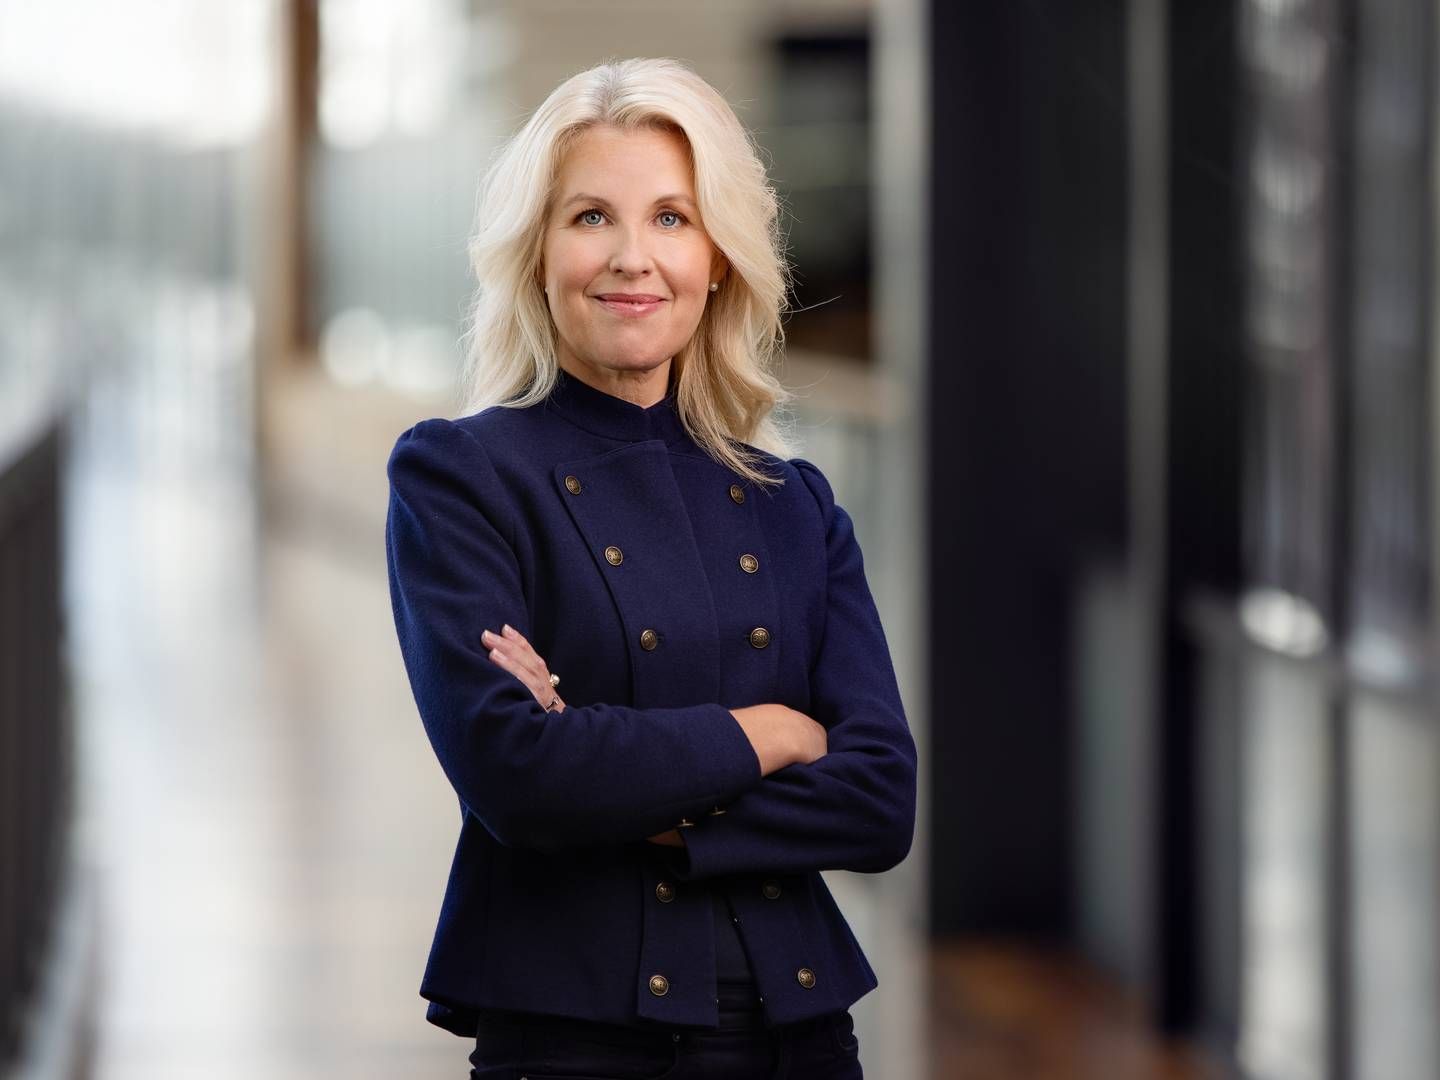 Maja Wikman Ulrich er kommunikationschef i Allente. Allente er en joint venture-virksomhed ejet ligeligt af Viaplay Group og Telenor-koncernen. | Foto: Pr / Allente